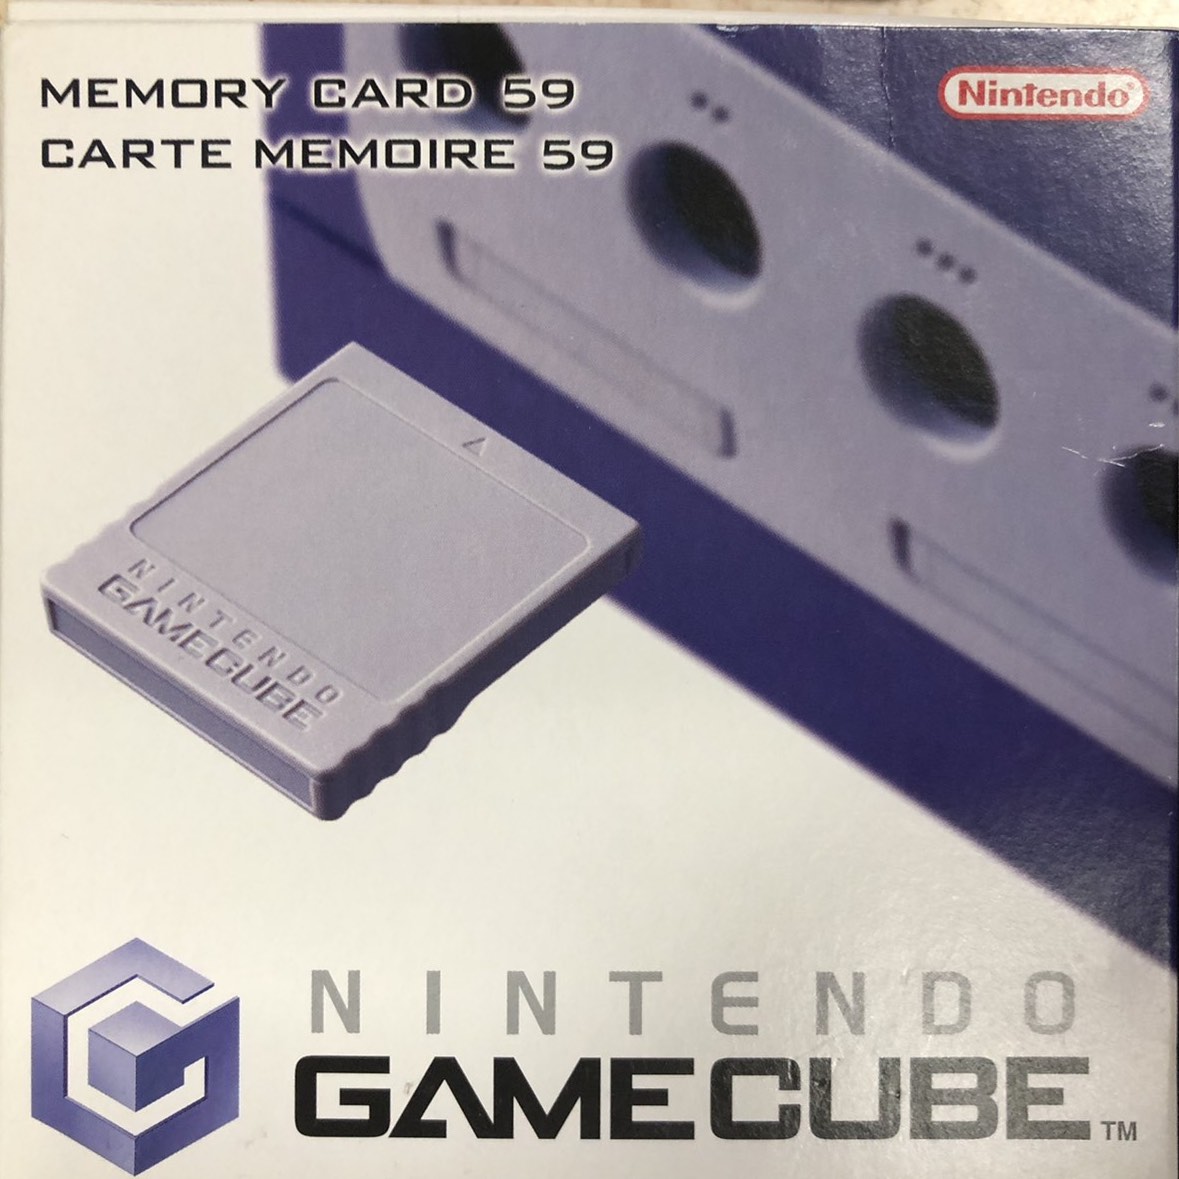 Nintendo GameCube memóriakártya, ezüst (retail, újszerű)